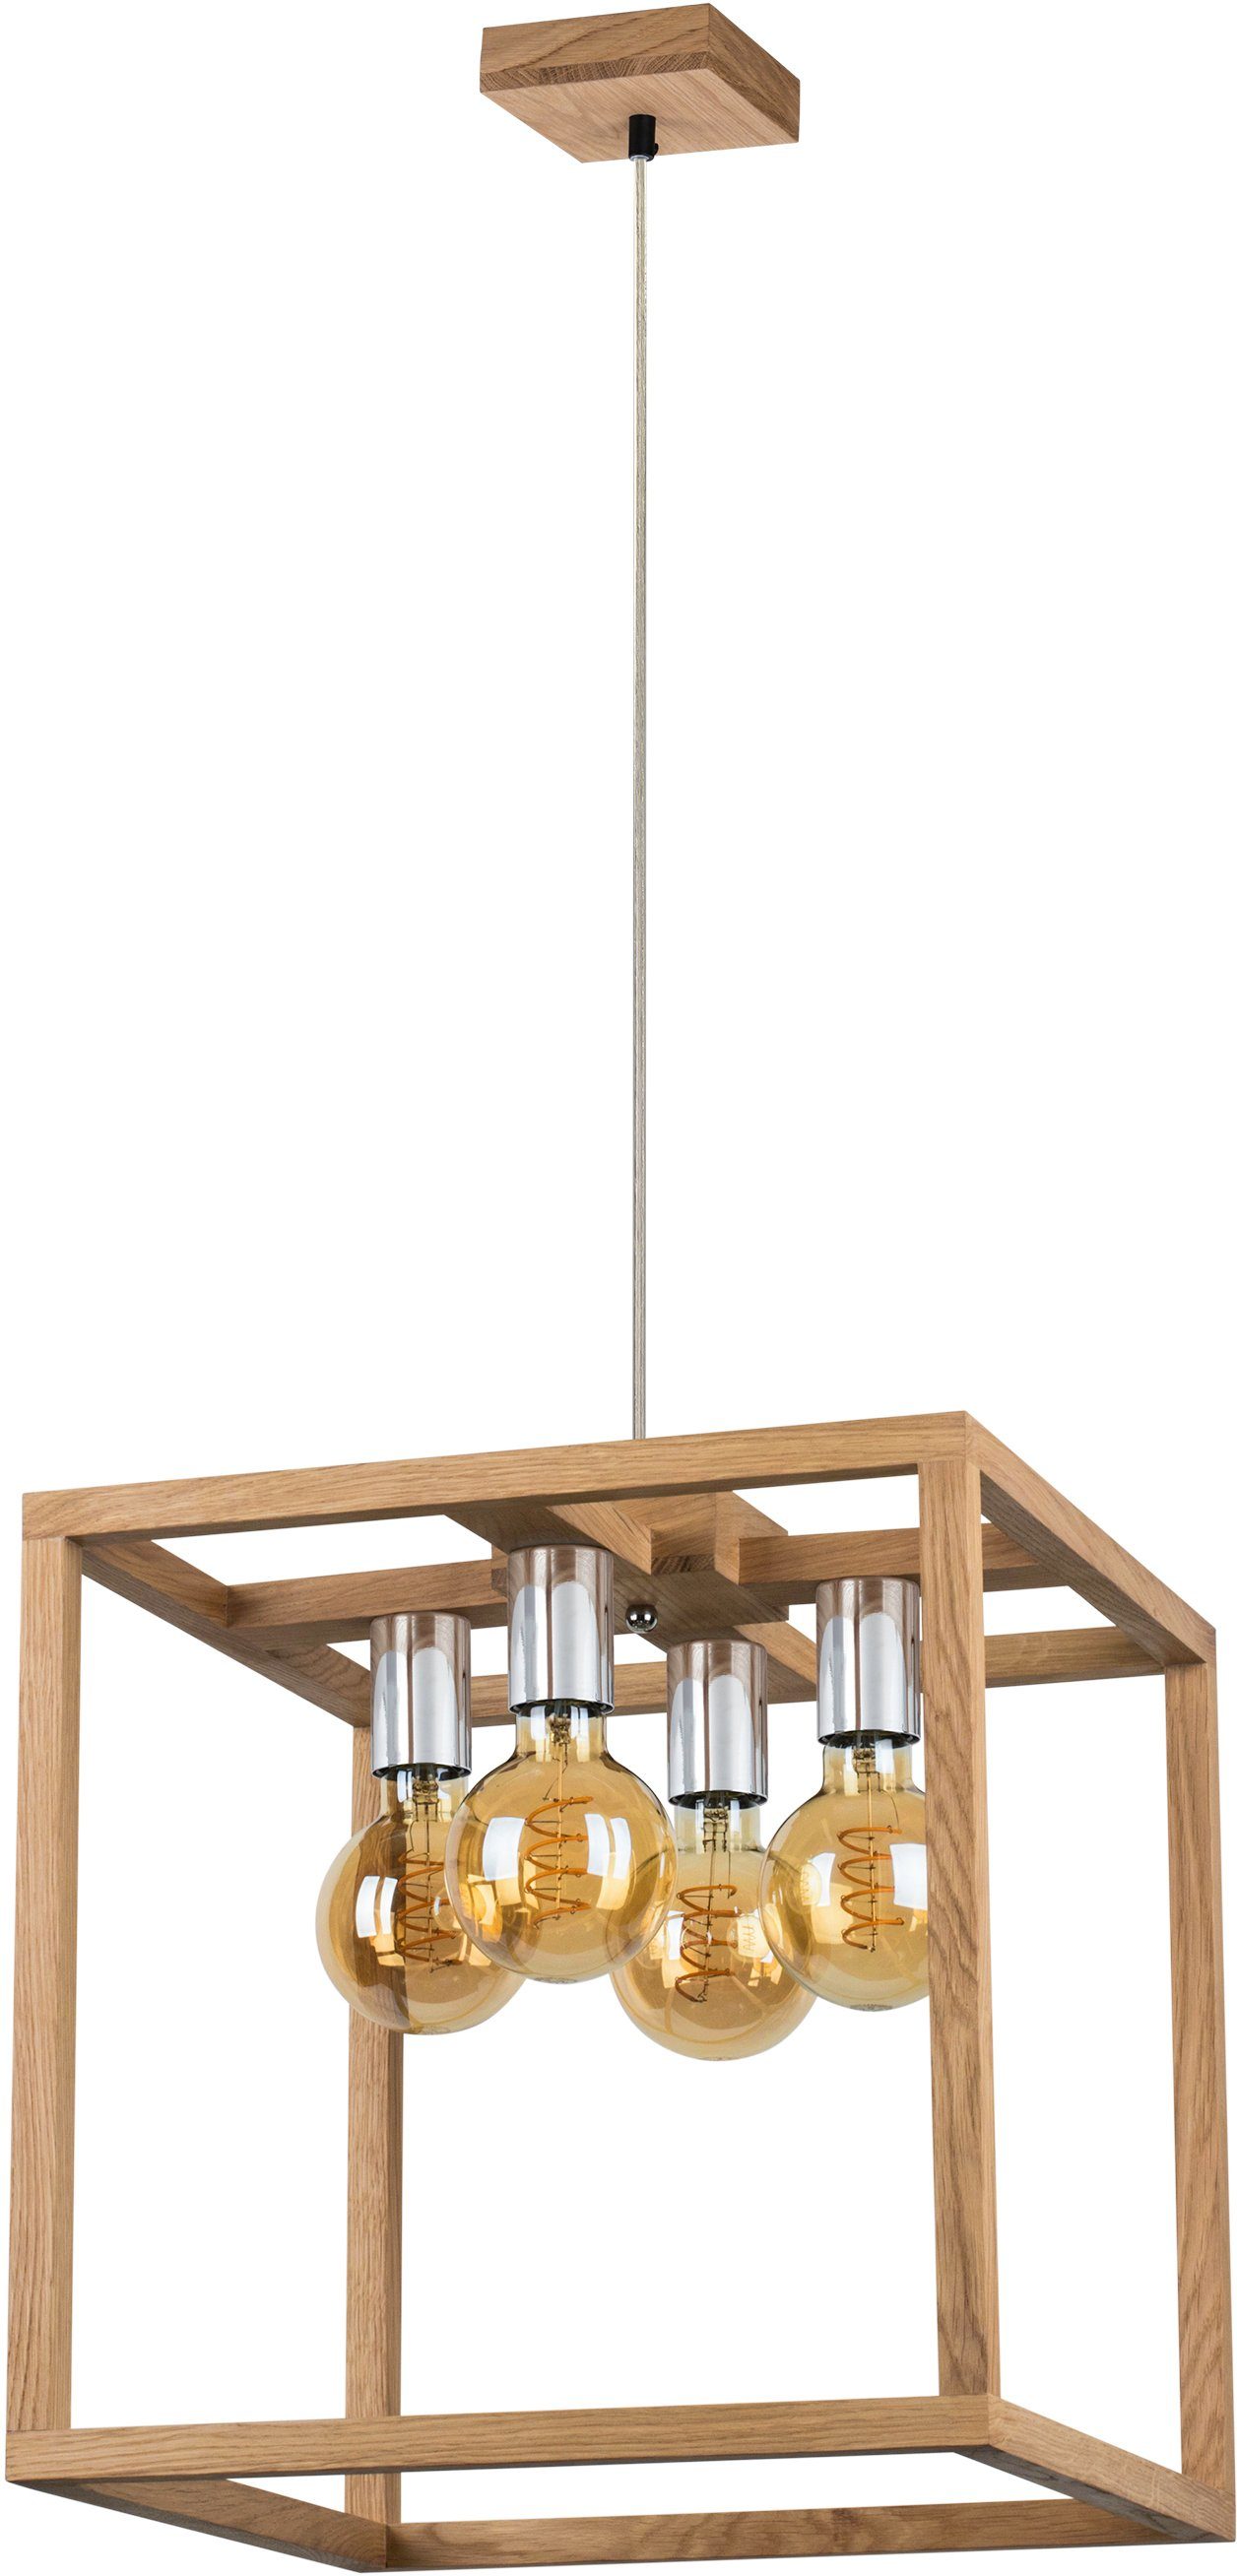 spot light hanglamp kago hanglamp, natuurproduct van eikenhout, duurzaam, kabel in te korten bruin